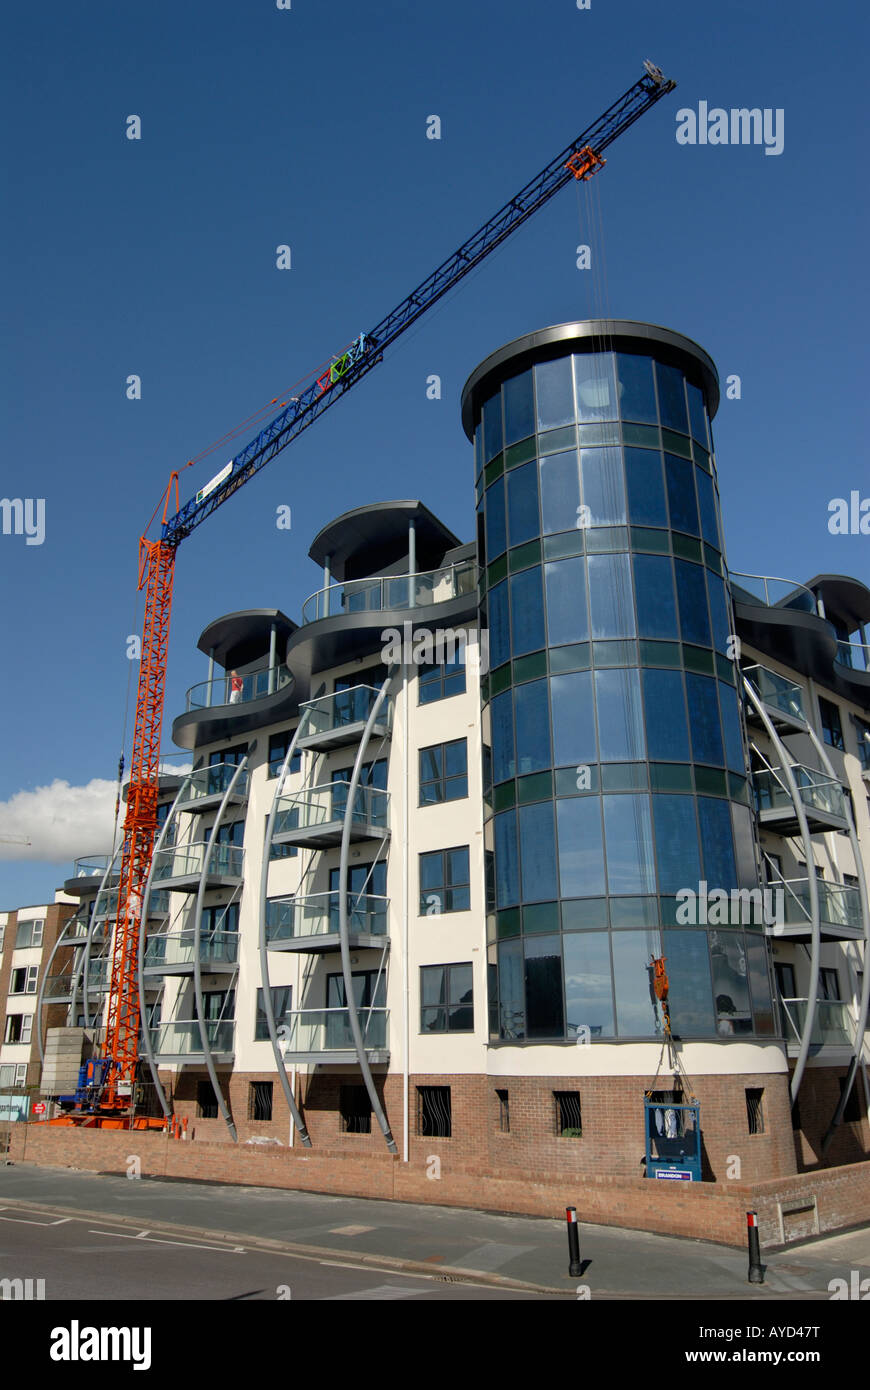 New seafront residential development at Bognor Regis Stock Photo